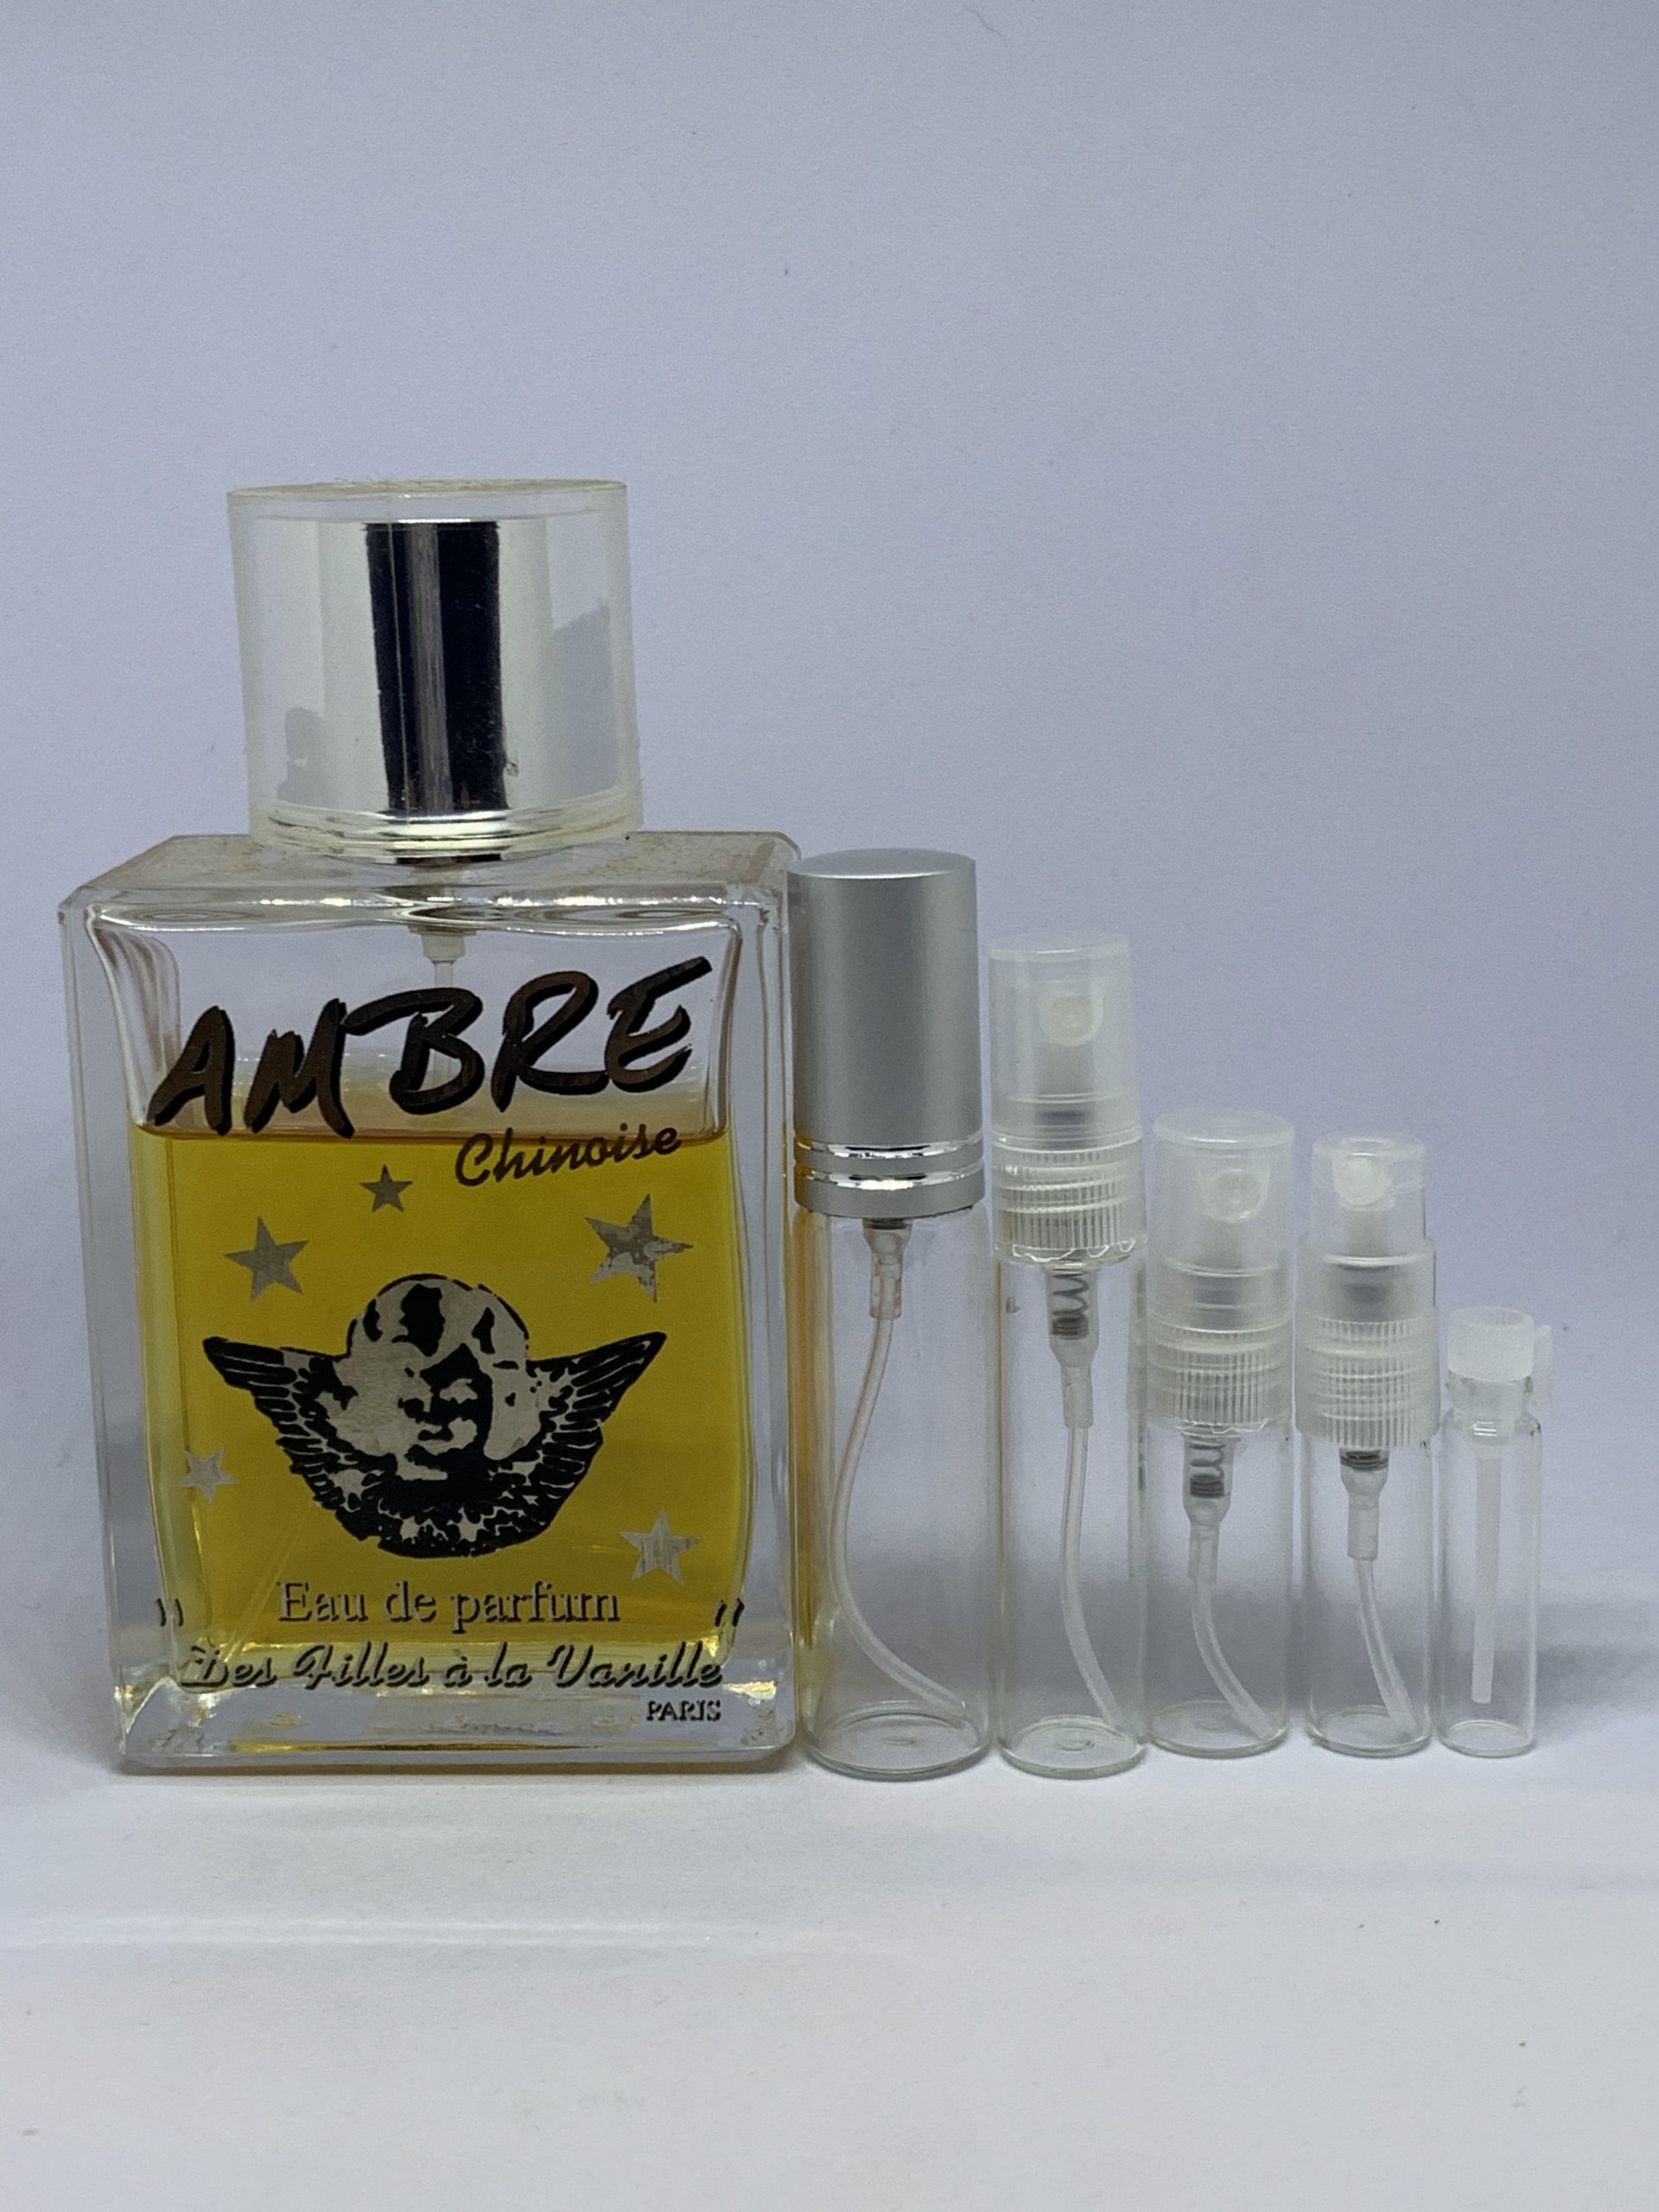 Vanille Des Filles a la Vanille perfume - a fragrance for women